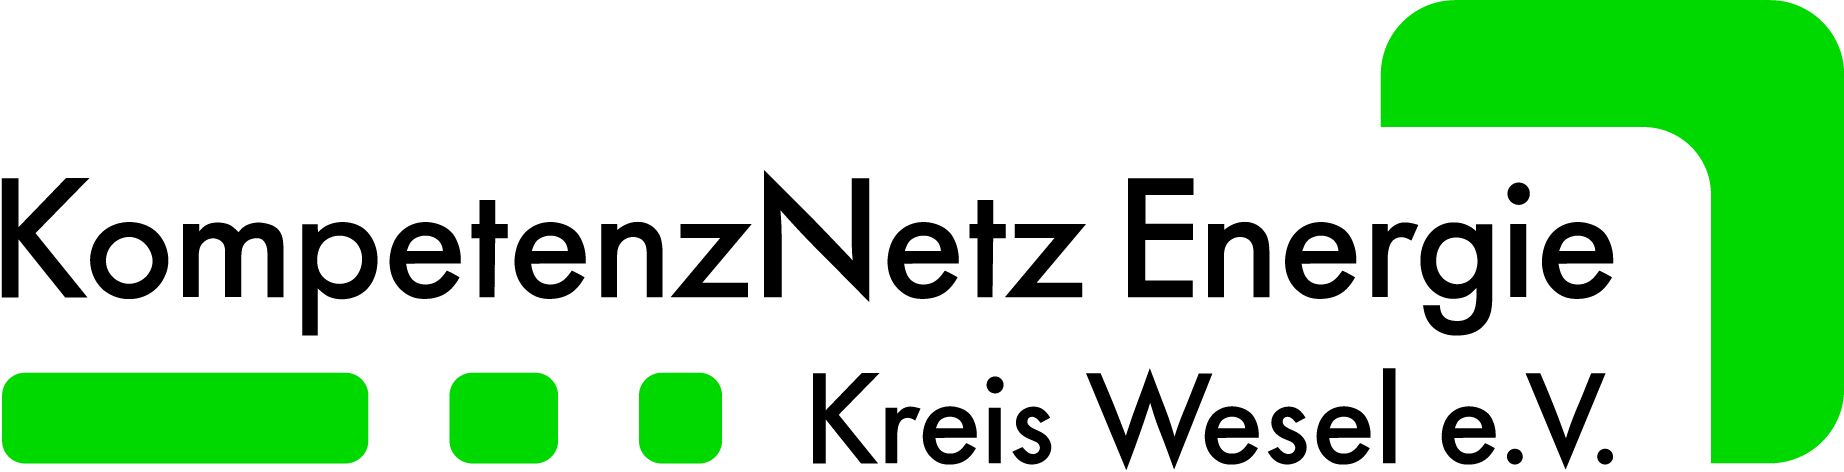 Logo Kompetenznetz Energie Kreis Wesel e. V.